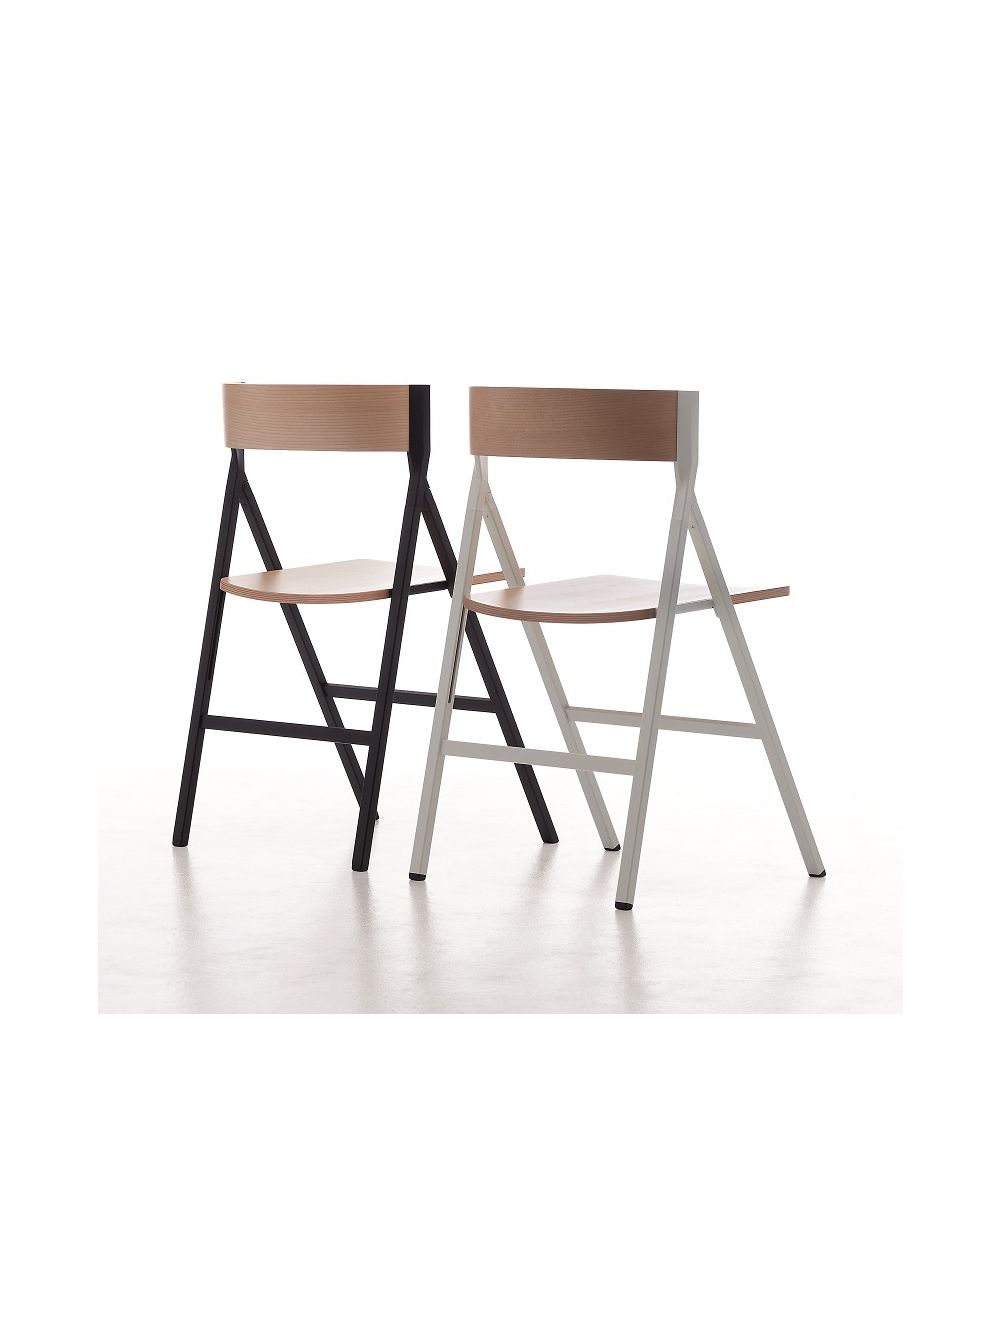 Ophef vlees opmerking Klapp Folding Chair Arrmet | Sedie.Design®